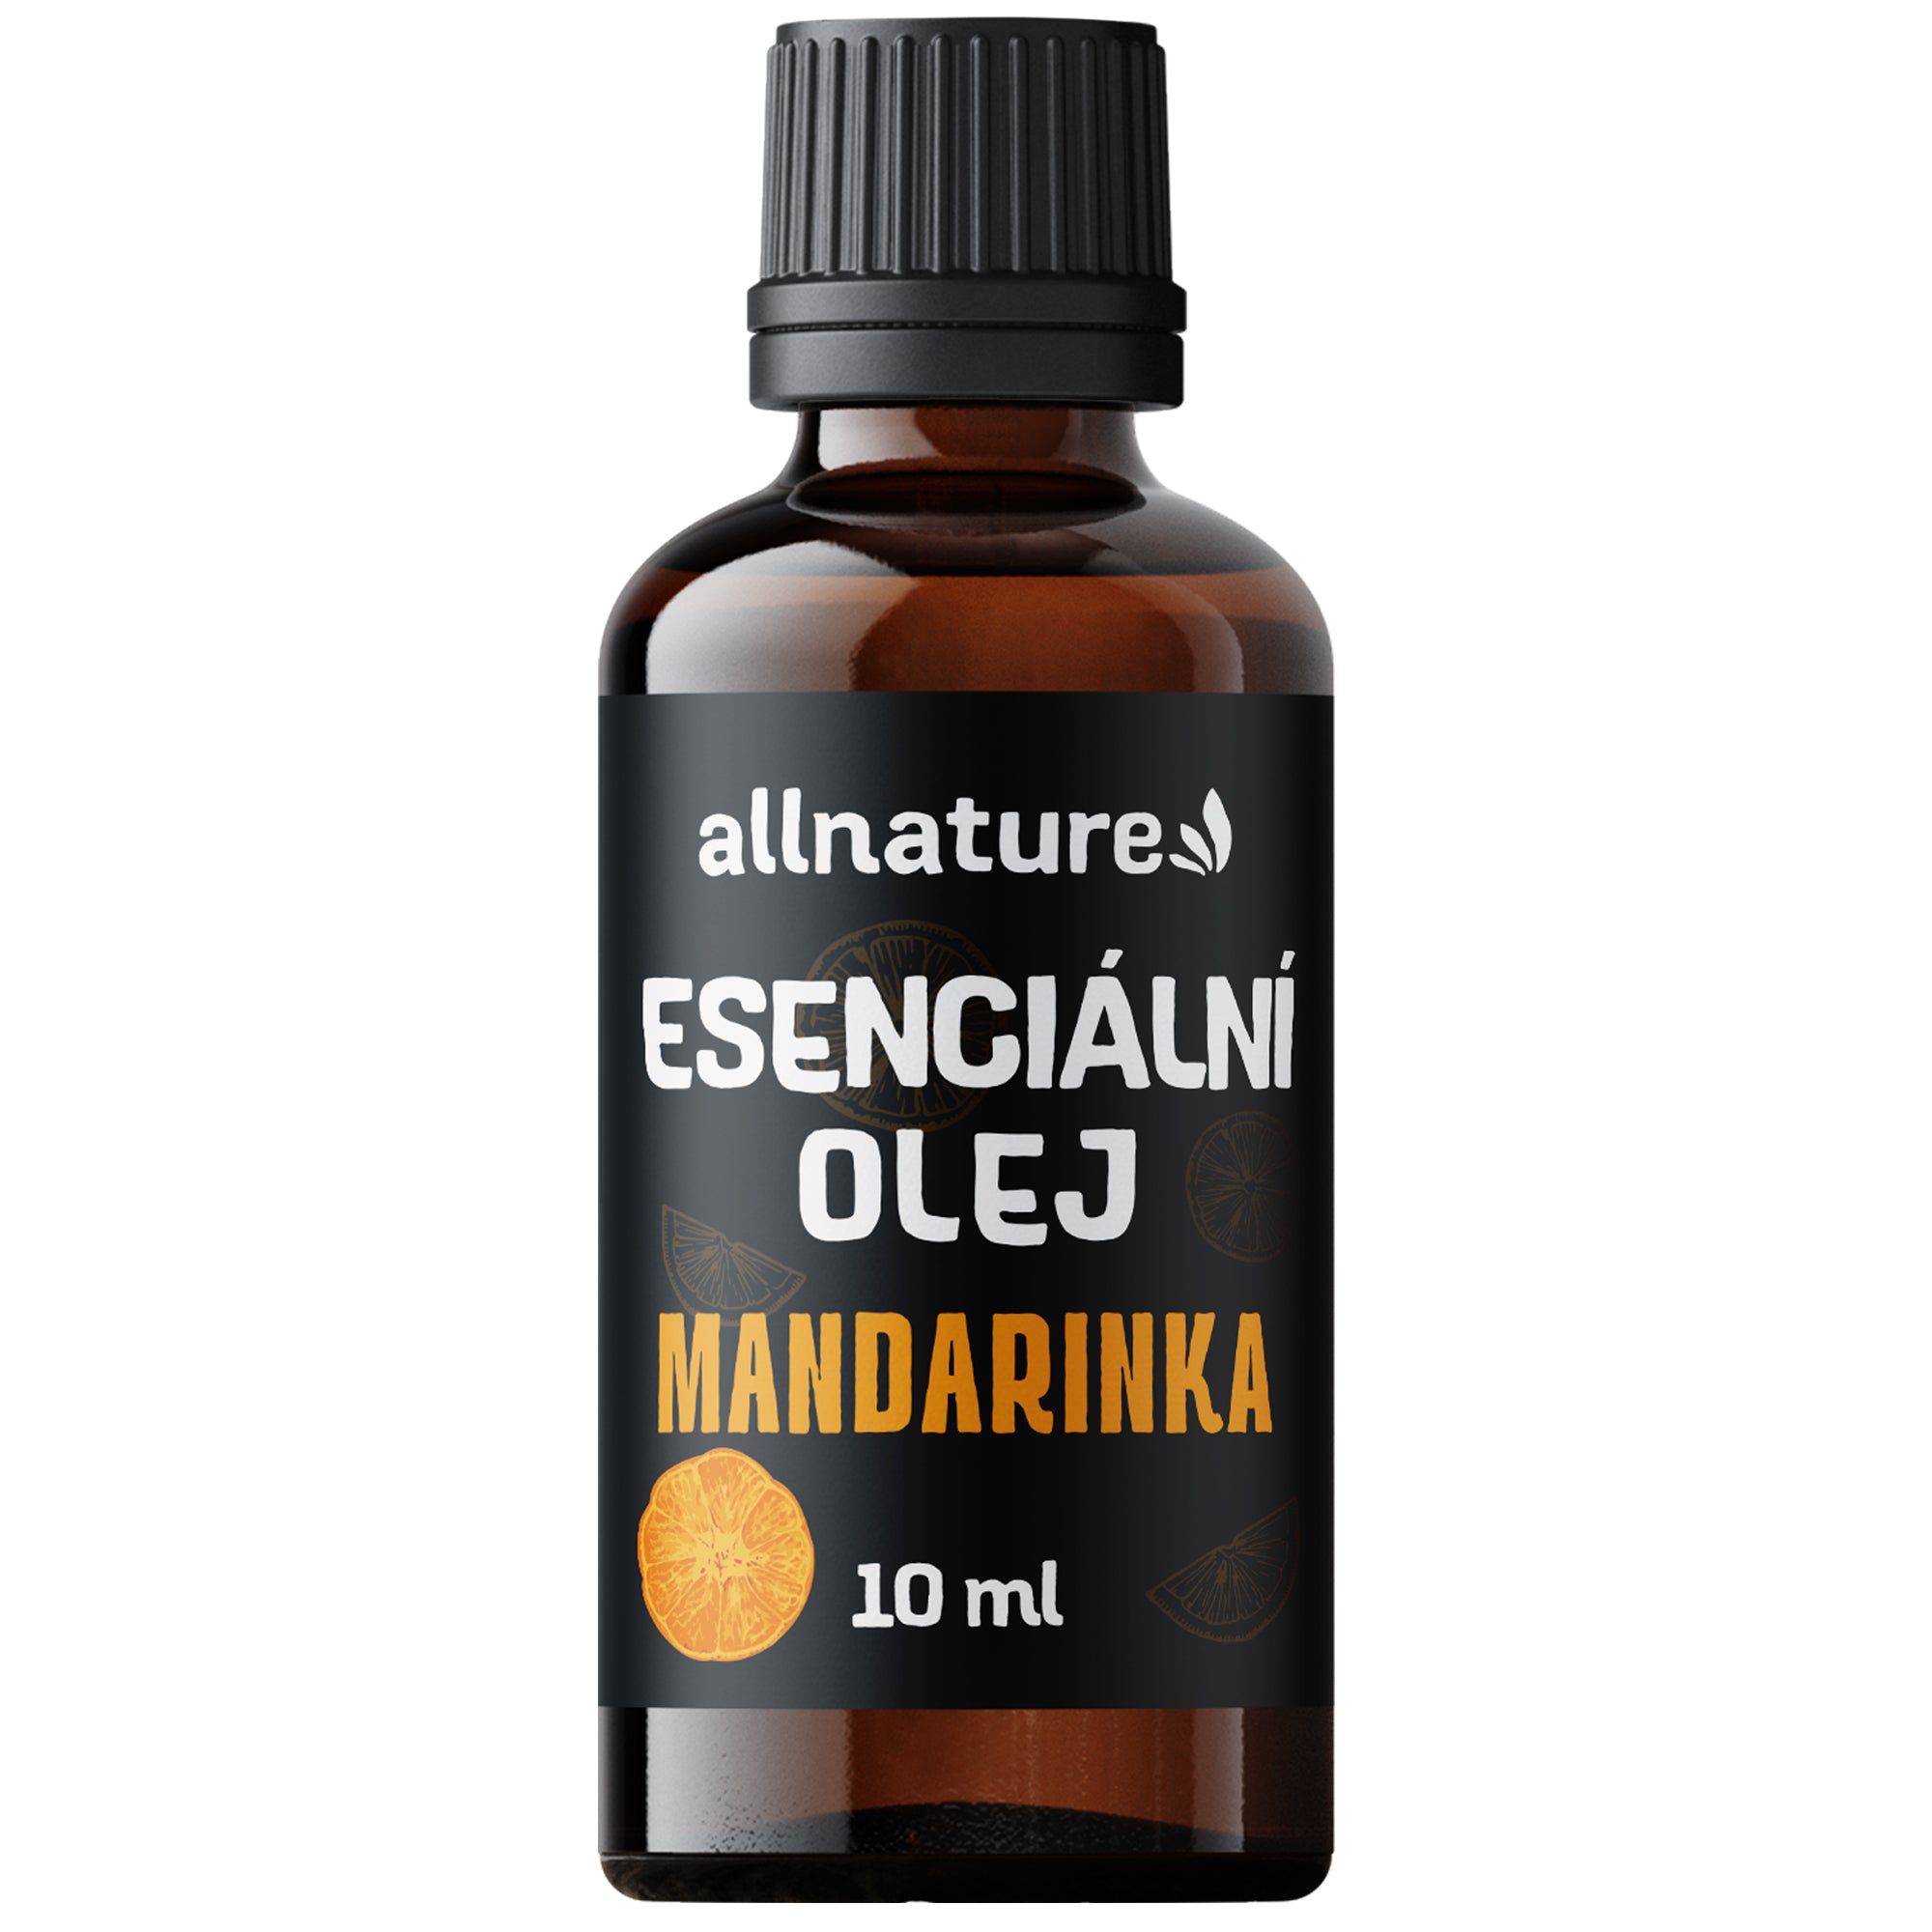 Allnature Esenciální olej Mandarinka (10 ml) - povzbuzení pro tělo a mysl Allnature